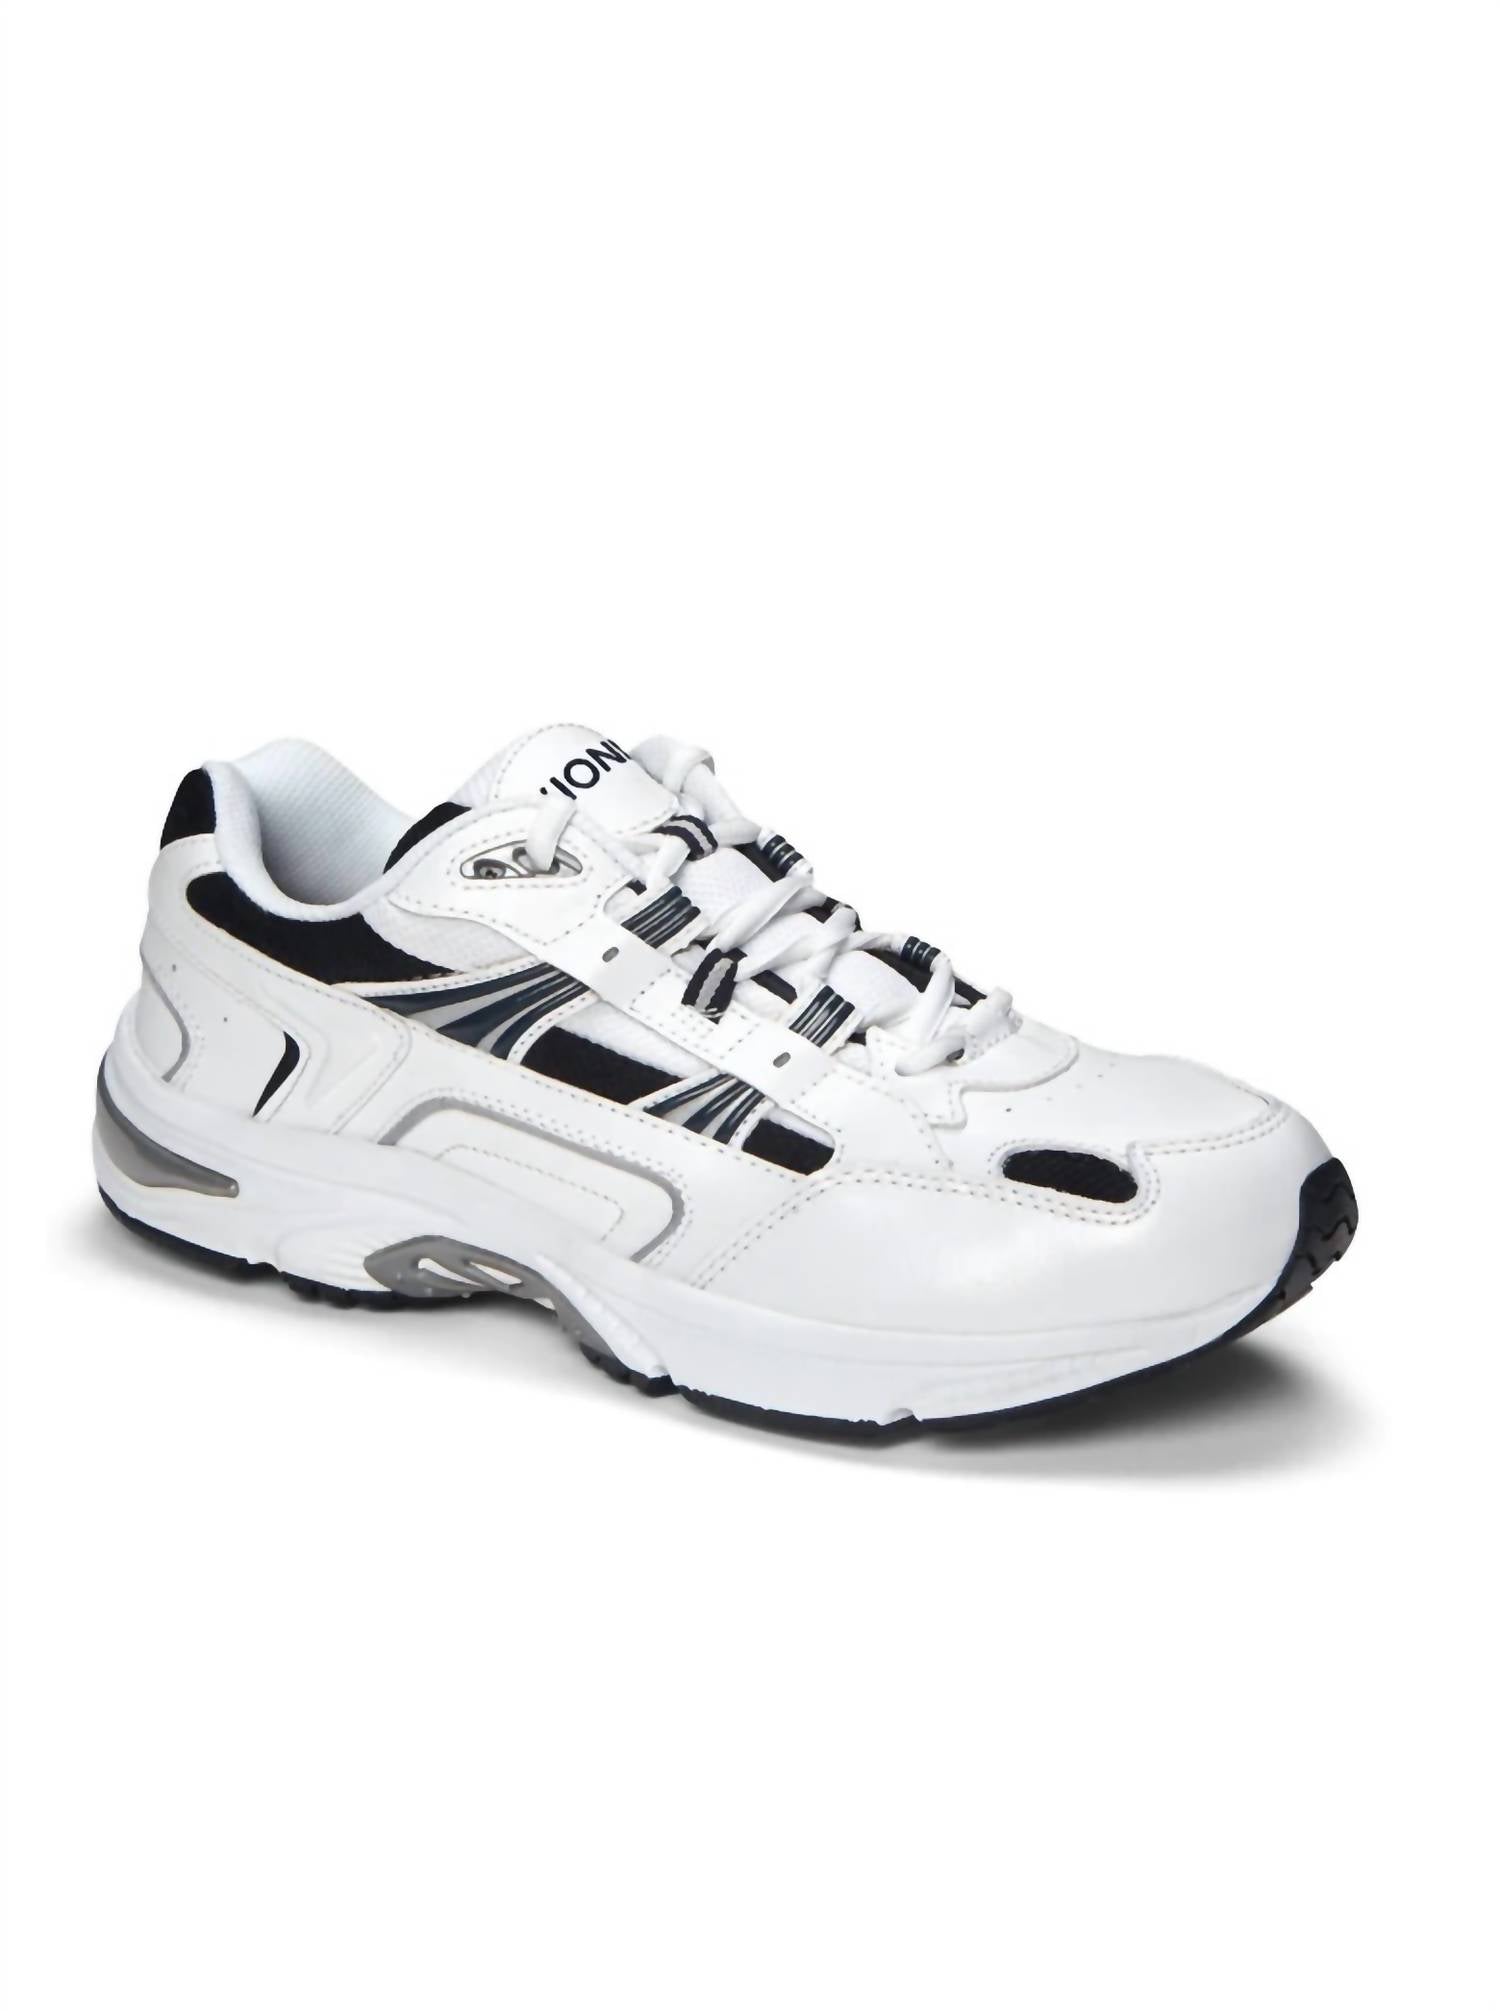 VIONIC Men'S Classic Walker Sneaker - Medium in White/Navy